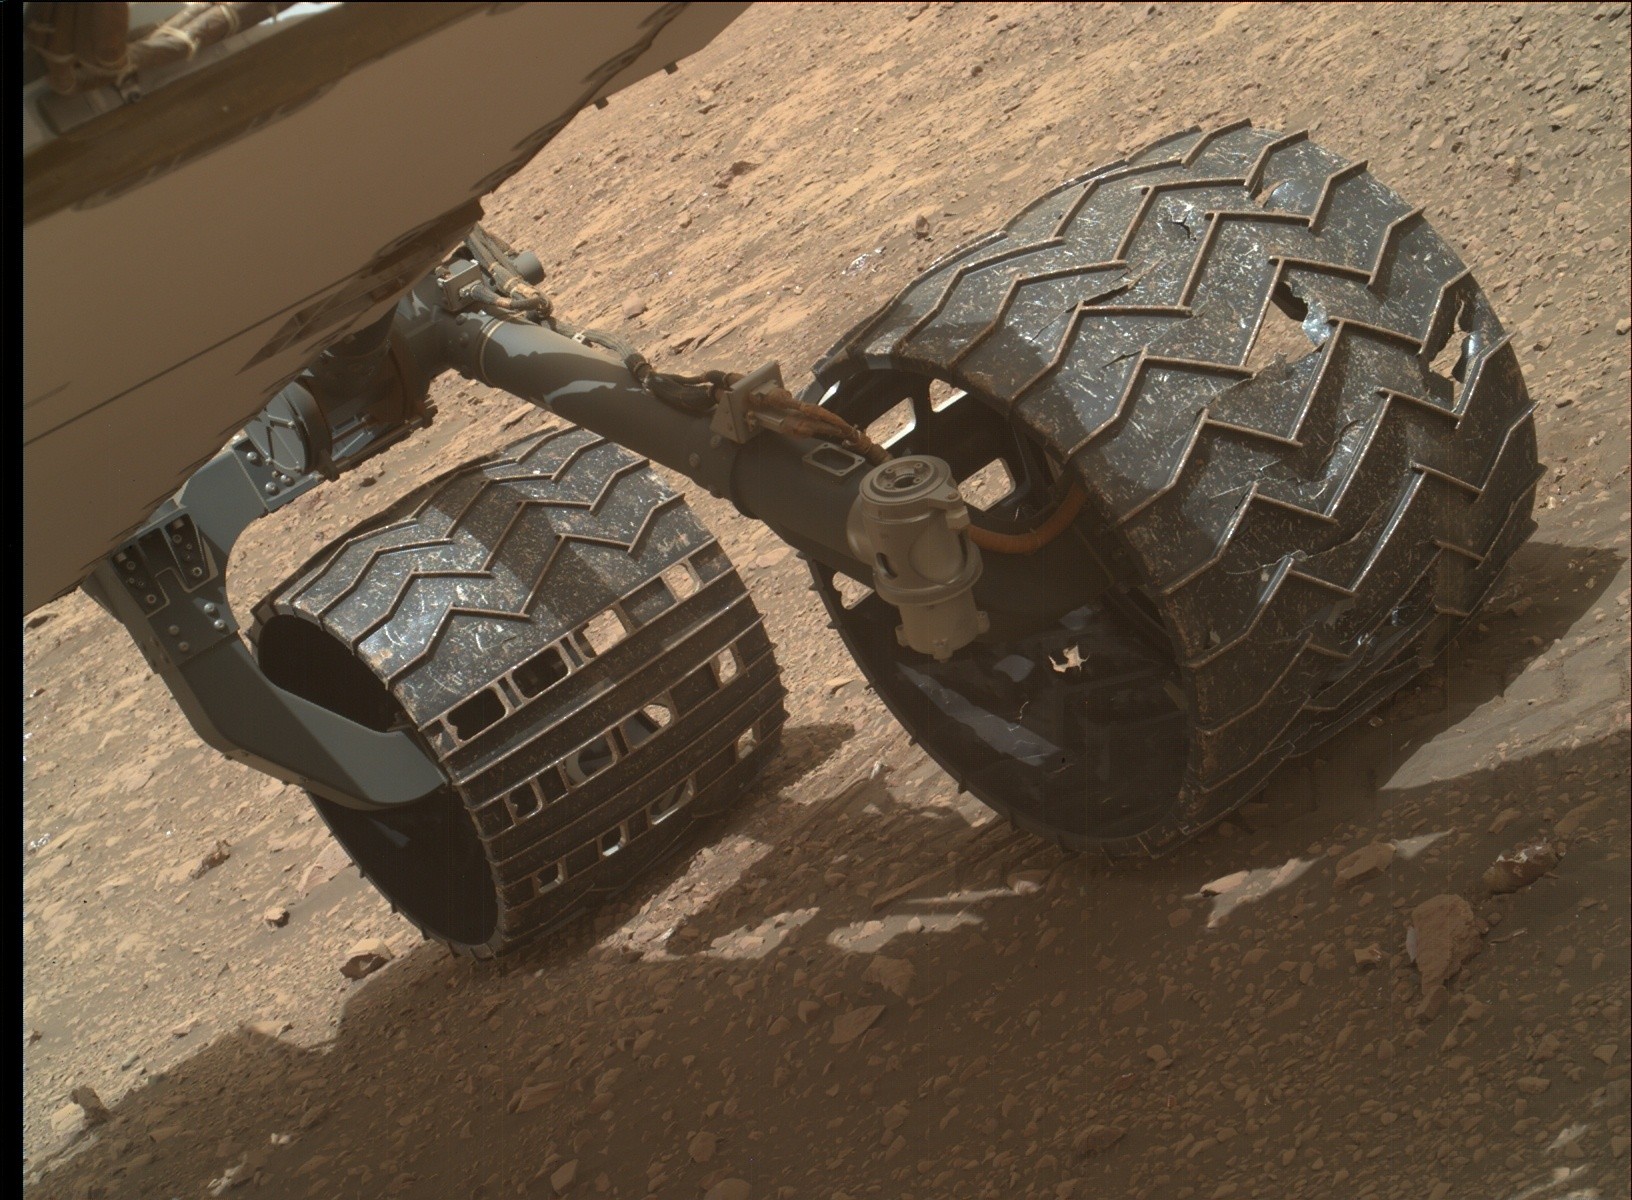 큐리오시티 로버의 바퀴는 수년에 걸쳐 손상을 입었다. 나사는 부서진 바퀴 일부가 로버의 궤도를 따라 흩어져 있을 것으로 추정하고 있다. 사진=NASA/JPL-Caltech